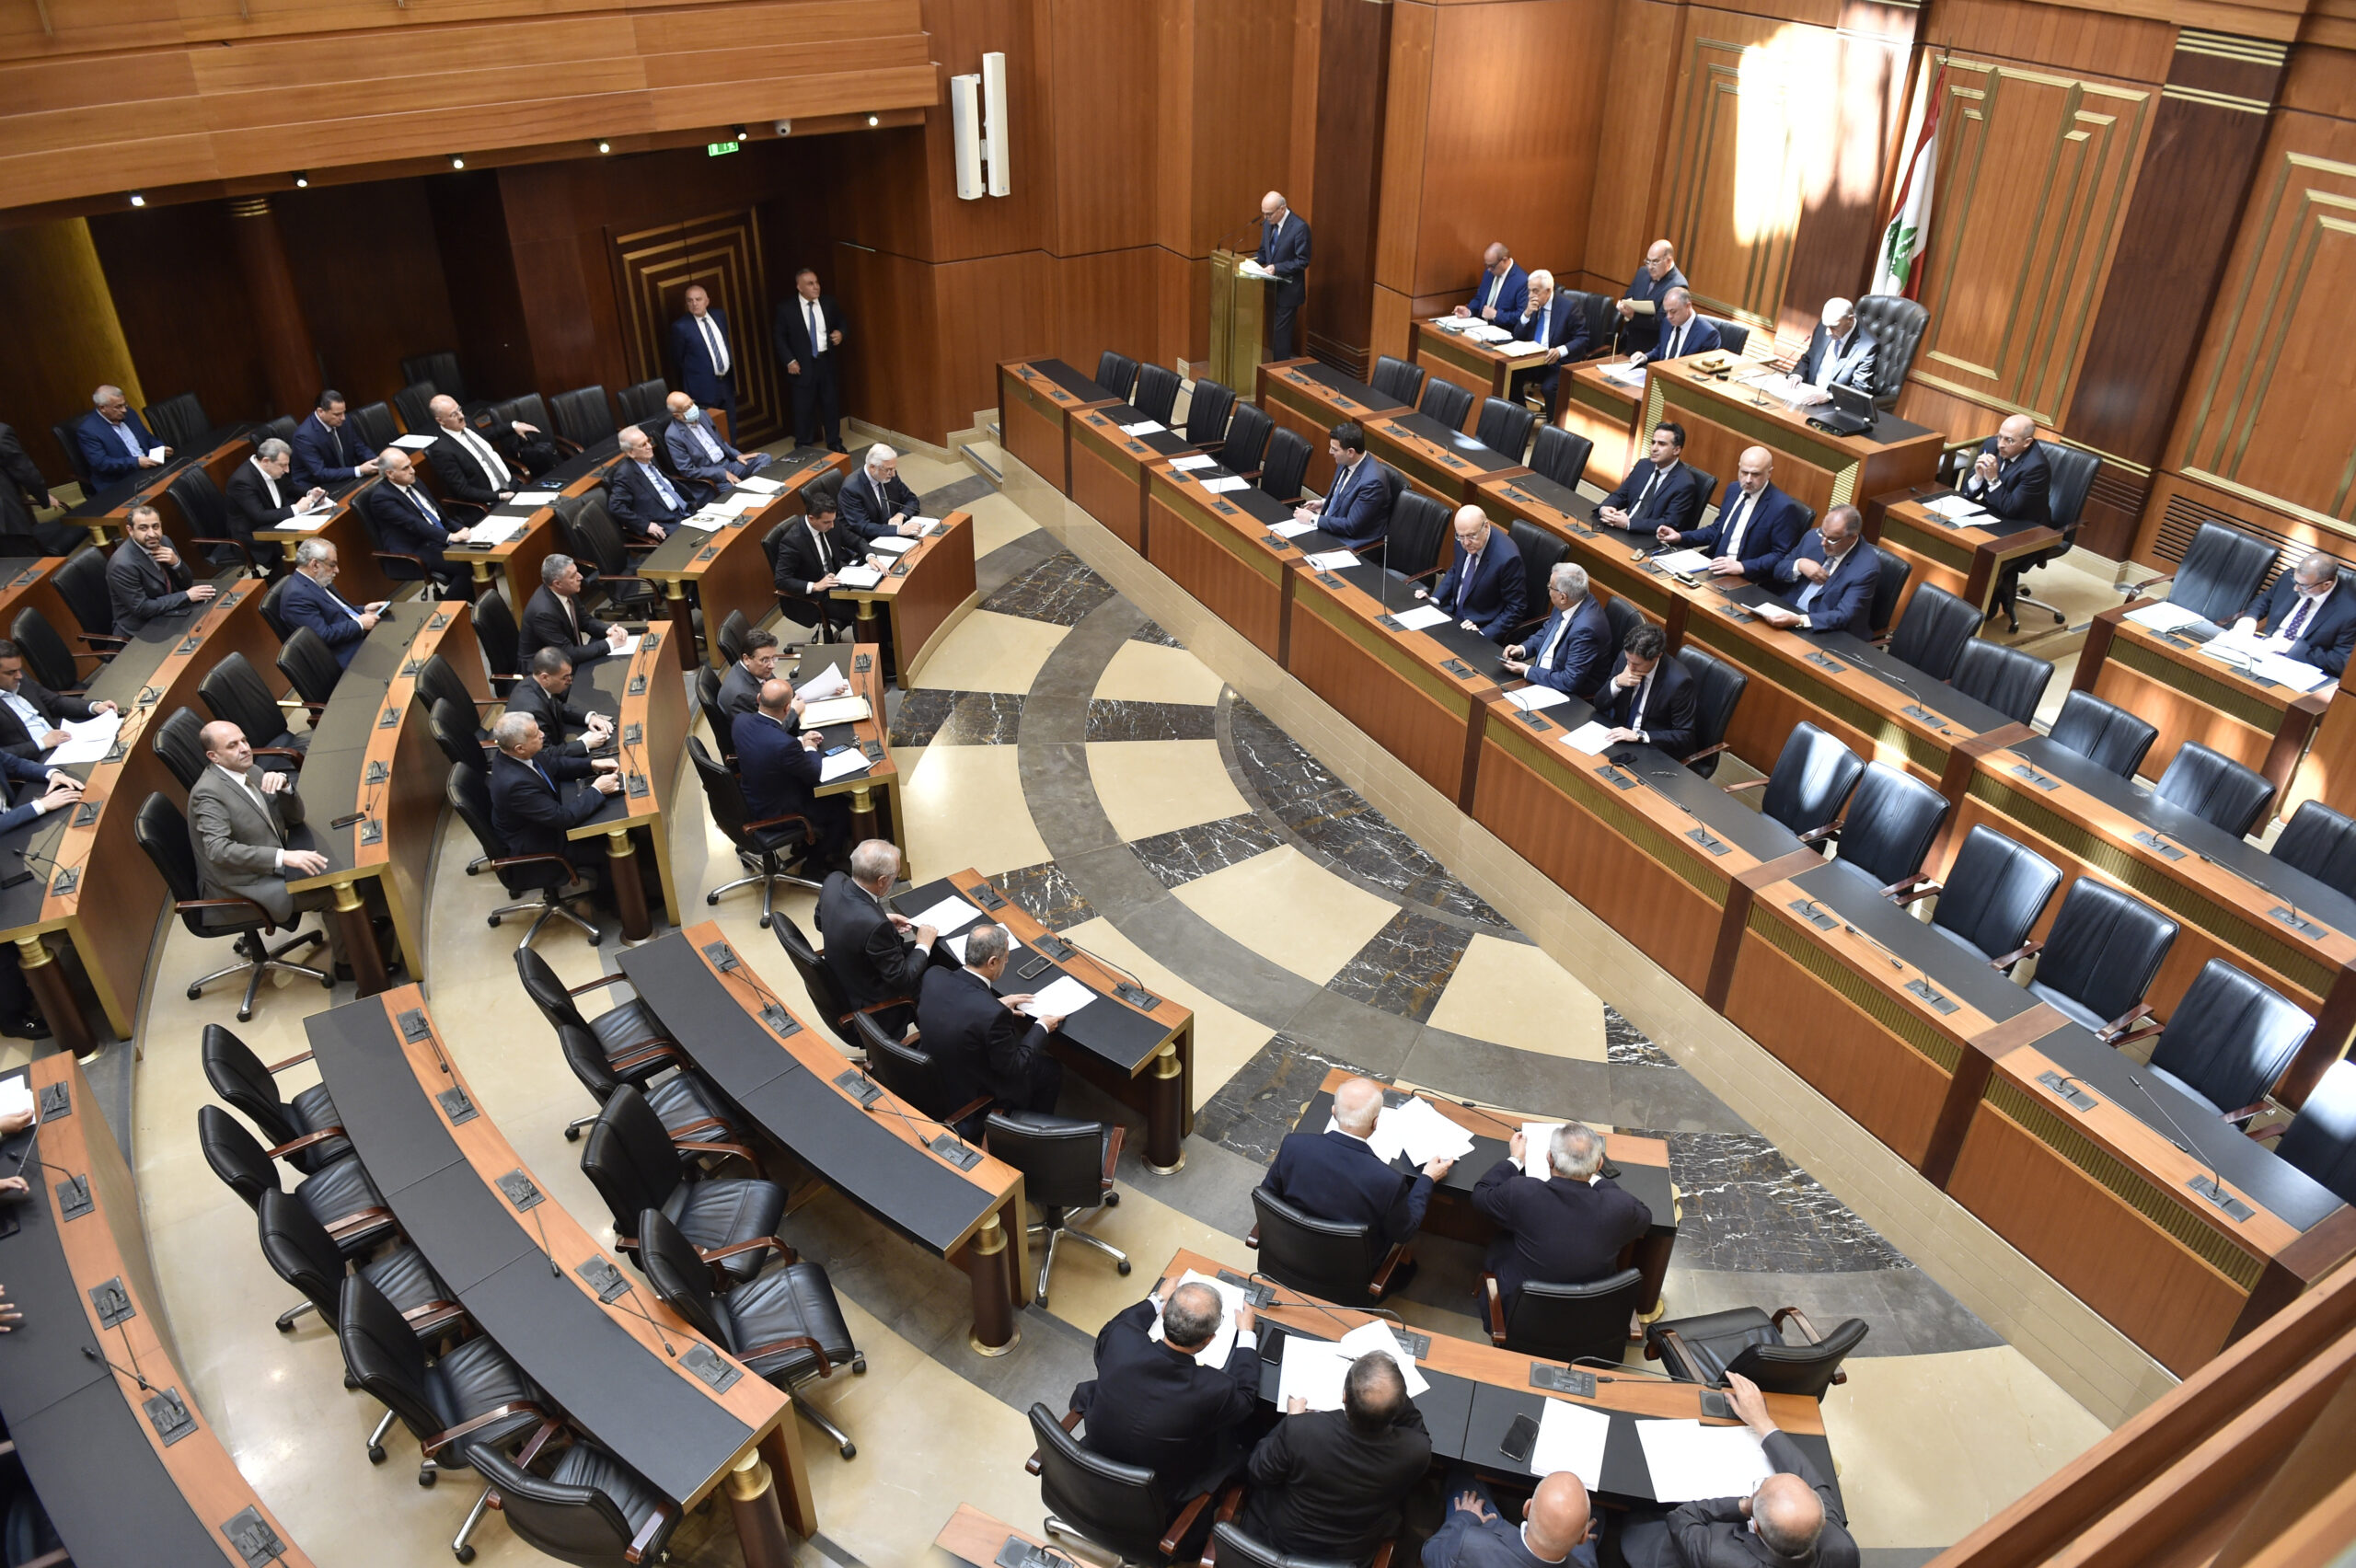 Λίβανος: Συνεδριάζει το κοινοβούλιο για εκλογή προέδρου της δημοκρατίας – «Πίεση» από ΗΠΑ για επίσπευση σχηματισμού κυβέρνησης